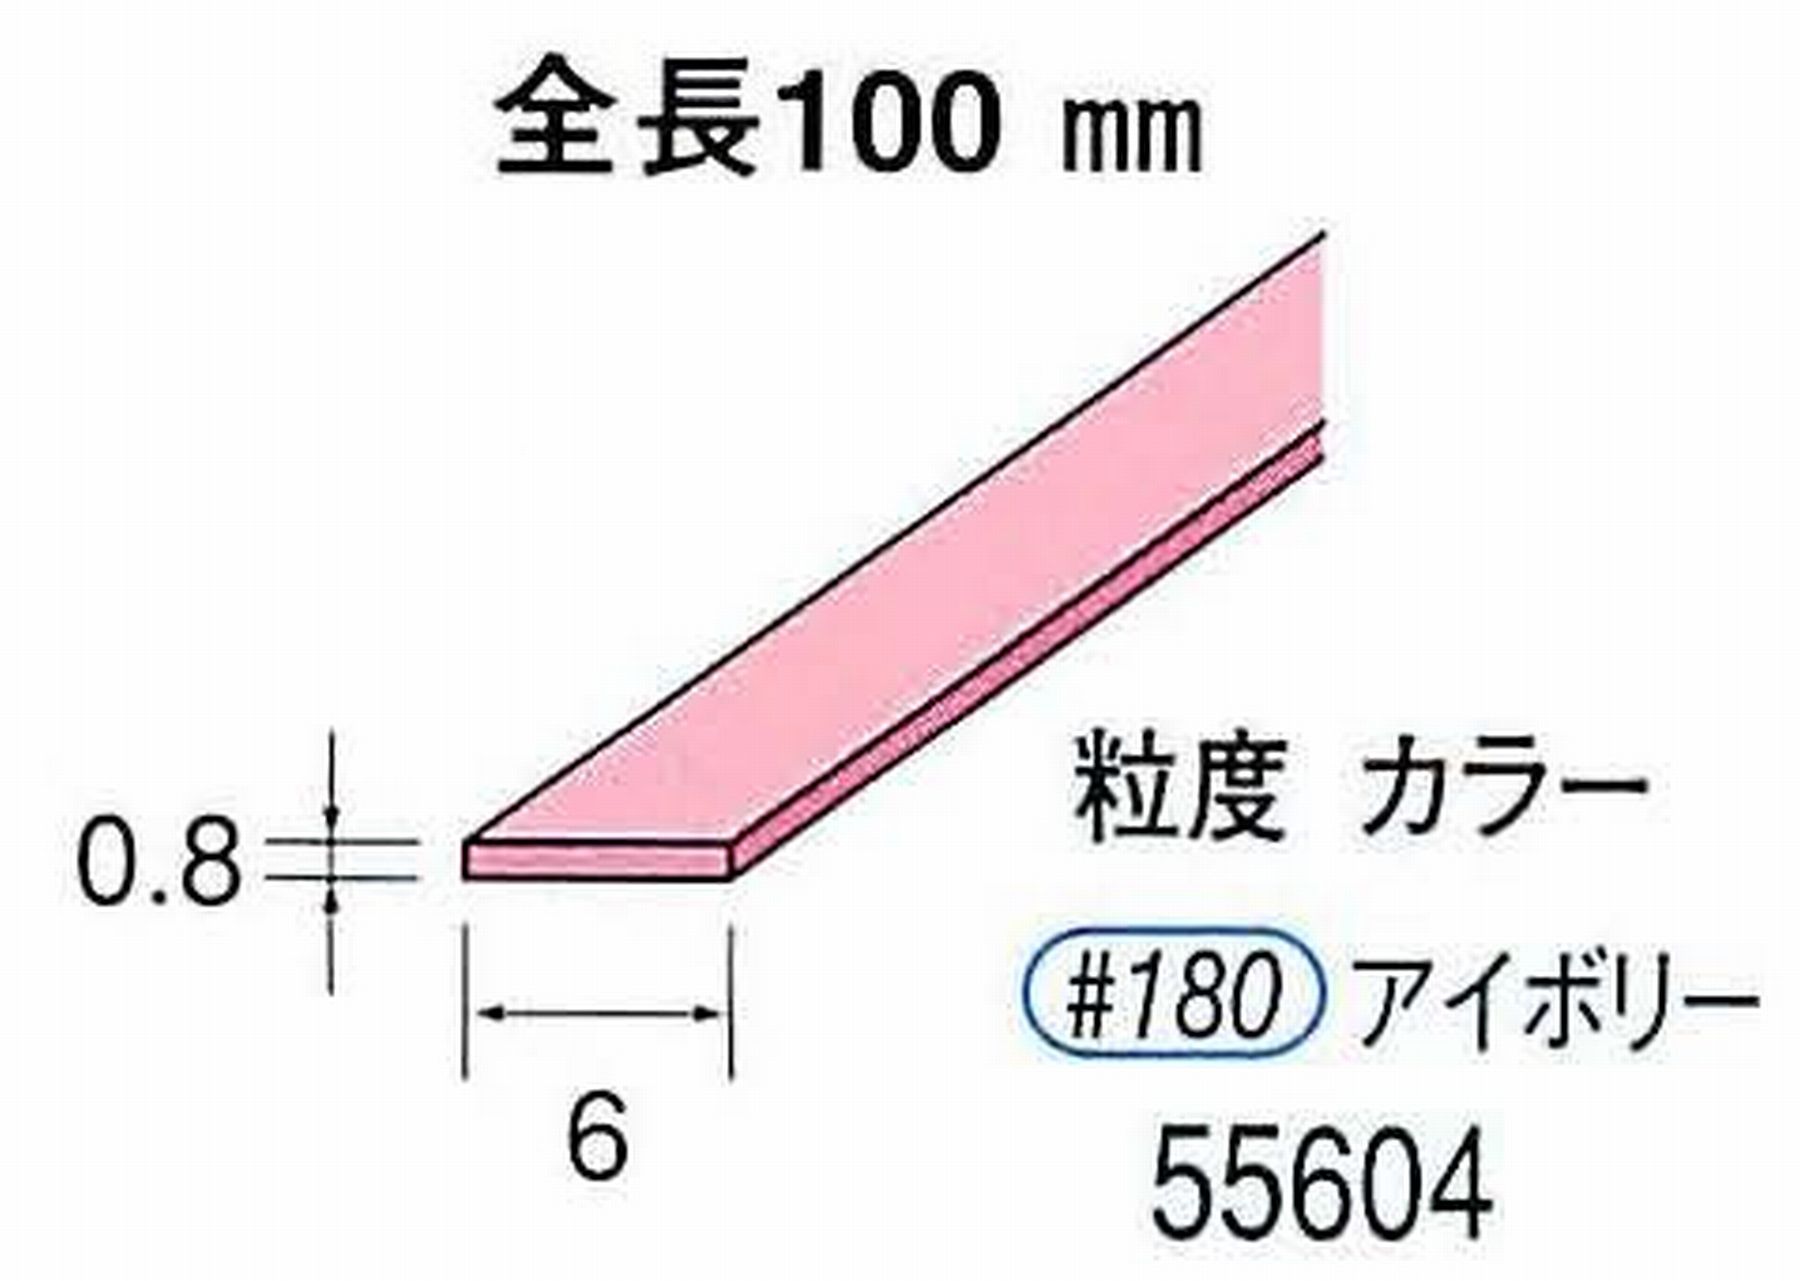 ナカニシ/NAKANISHI セラファイバー砥石 全長100mm アイボリー 55604